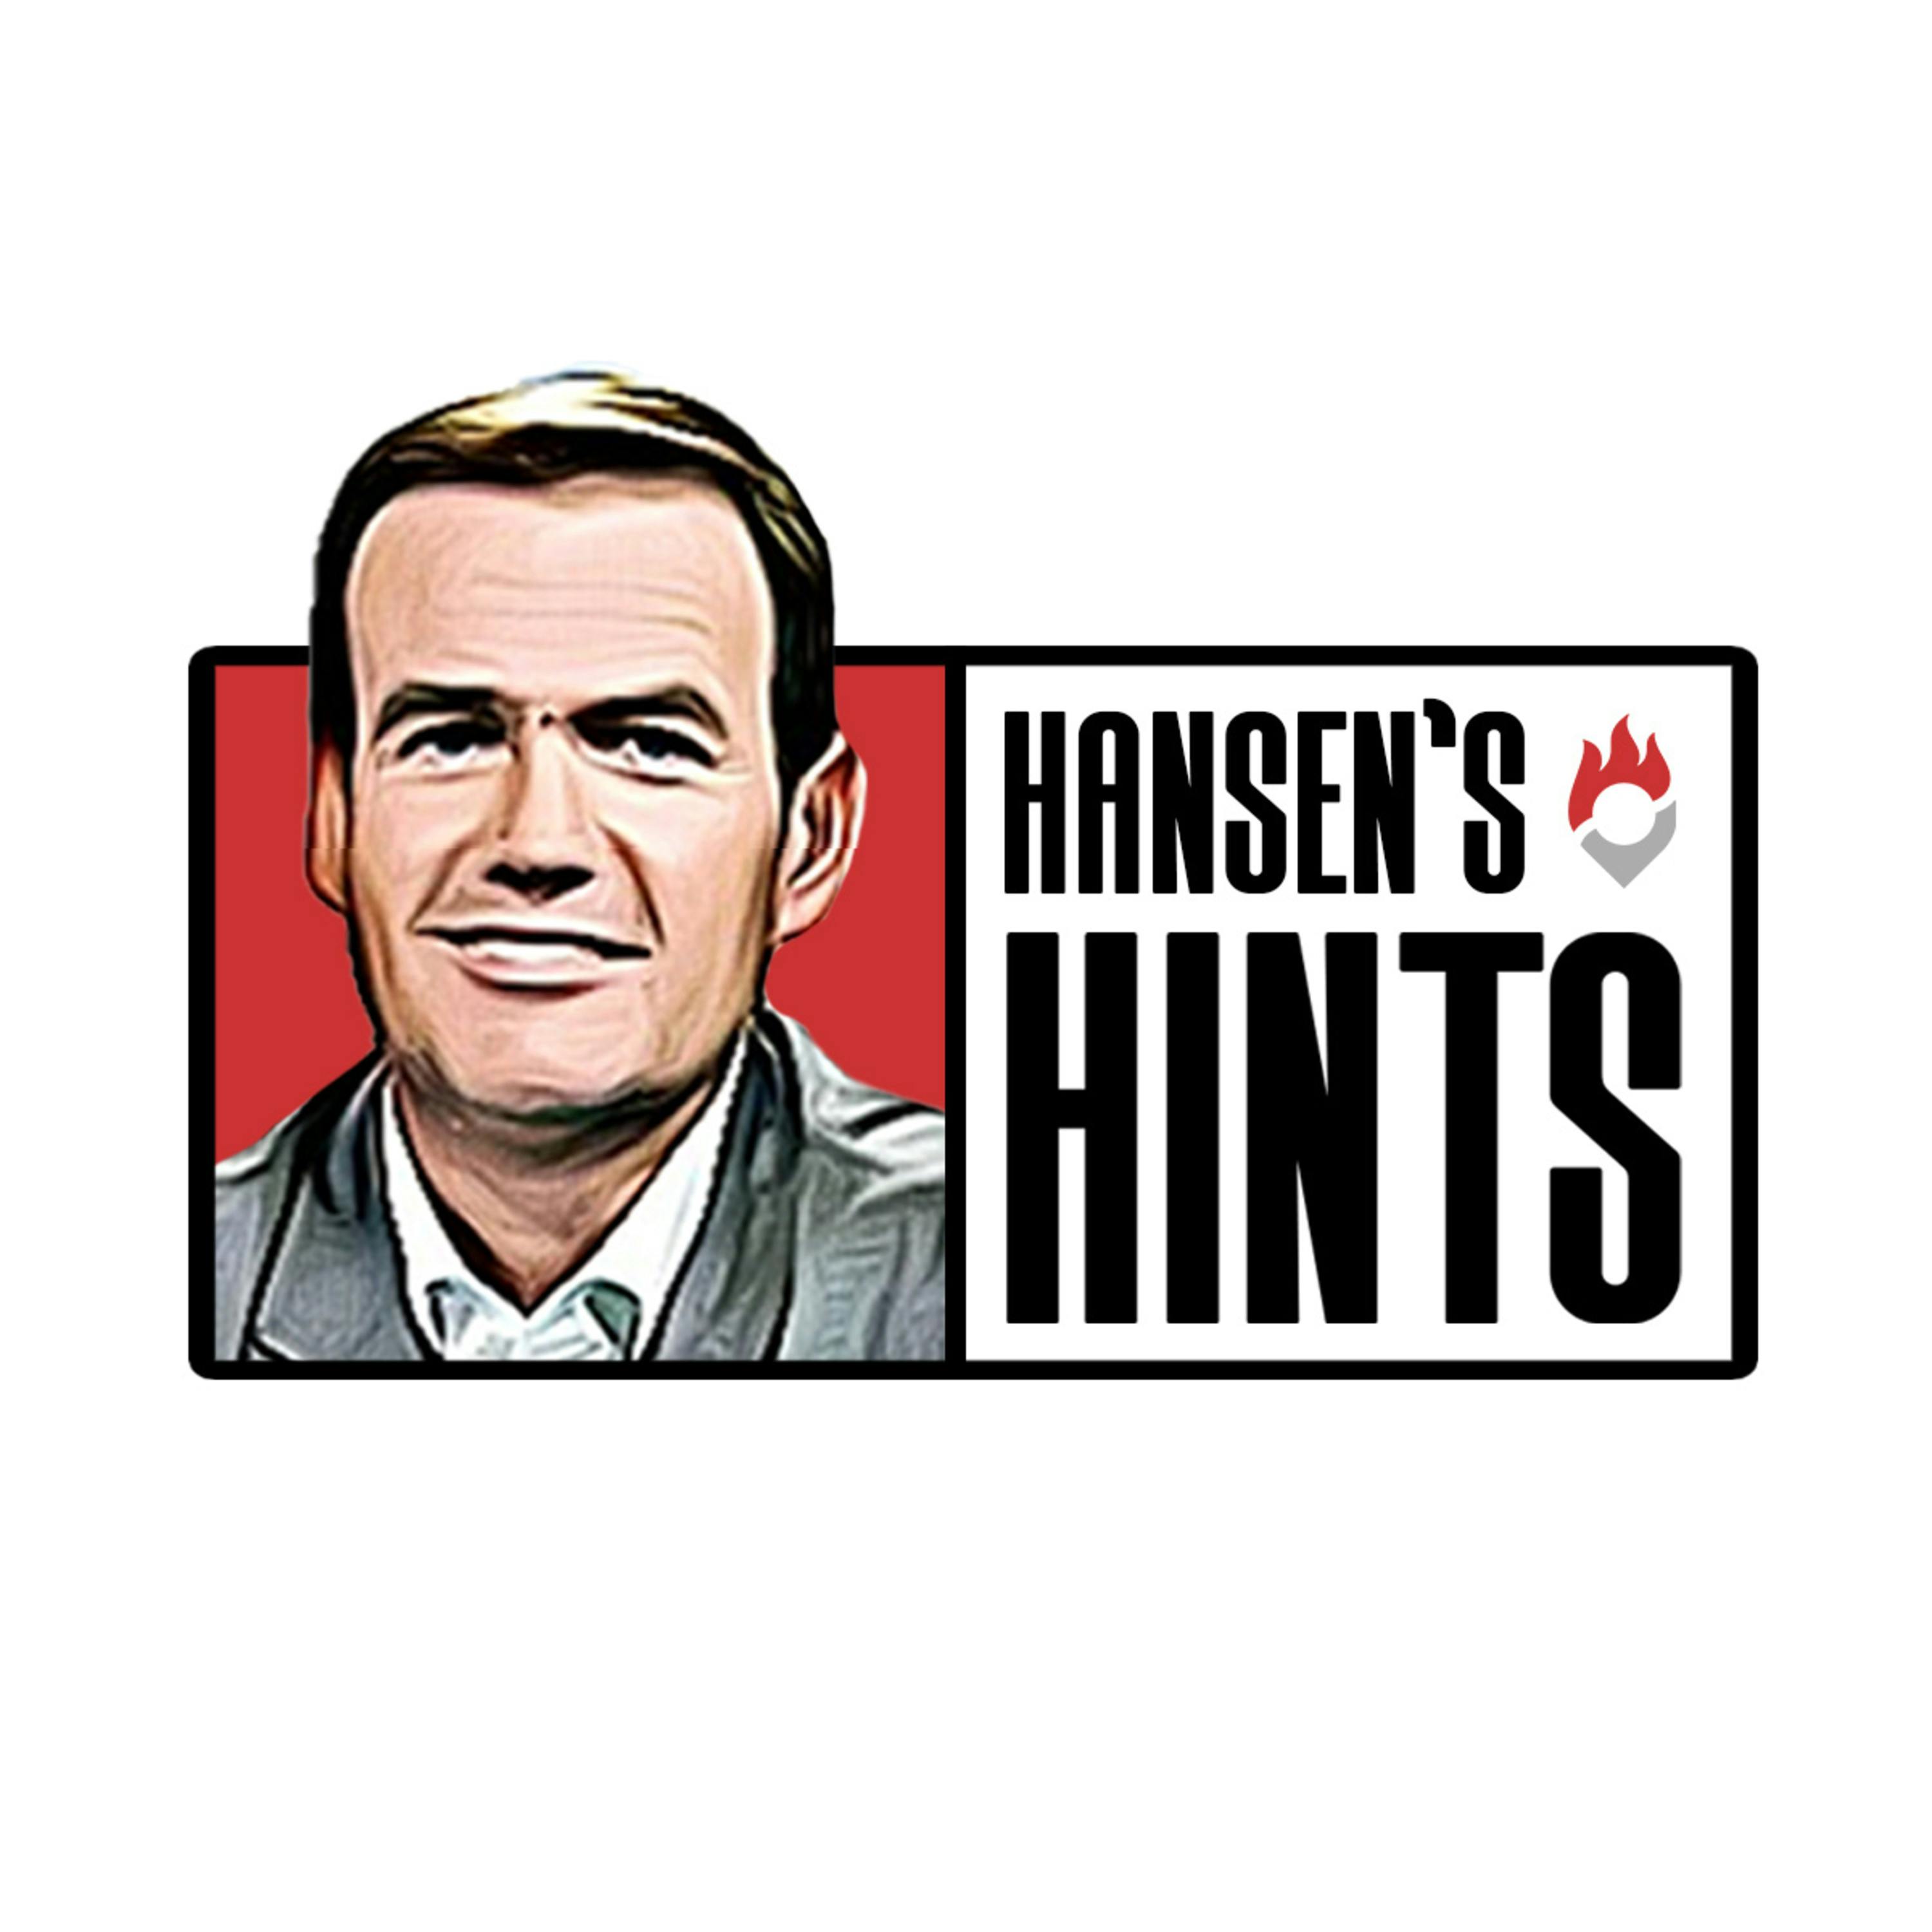 Guru’s Week 17 Preview | Hansen’s Hints Podcast